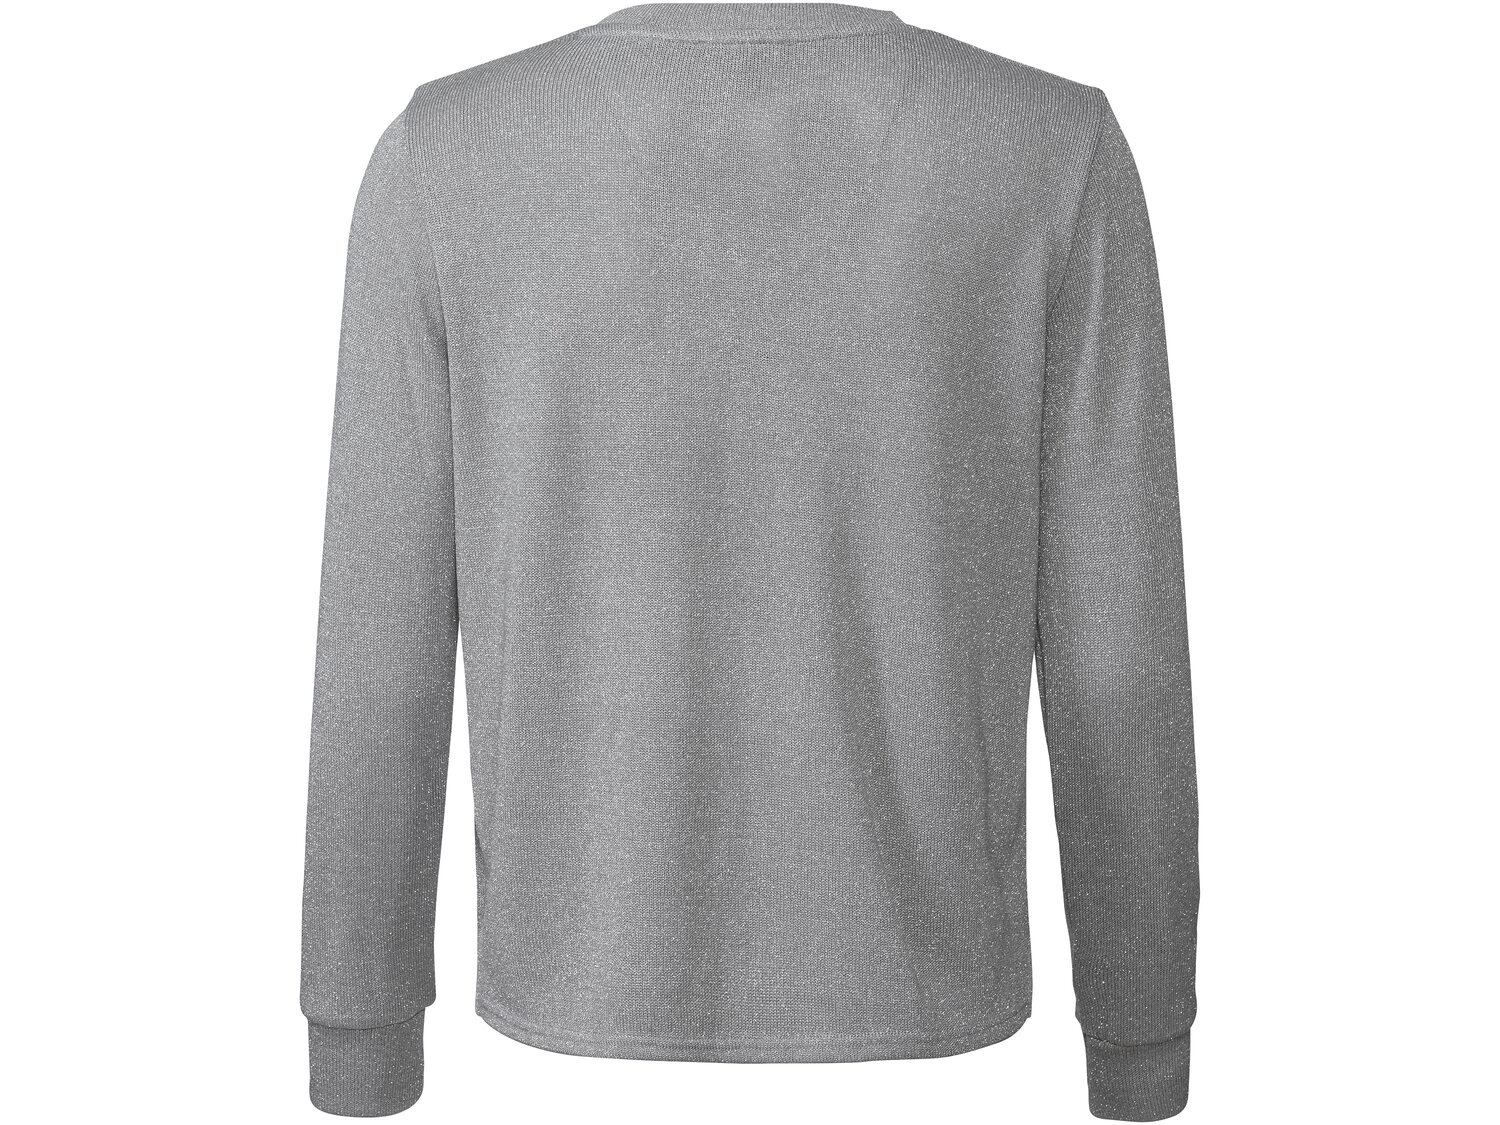 Sweter Esmara, cena 29,99 PLN 
- z błyszczącej dzianiny
- rozmiary: XS-L
Dostępne ...